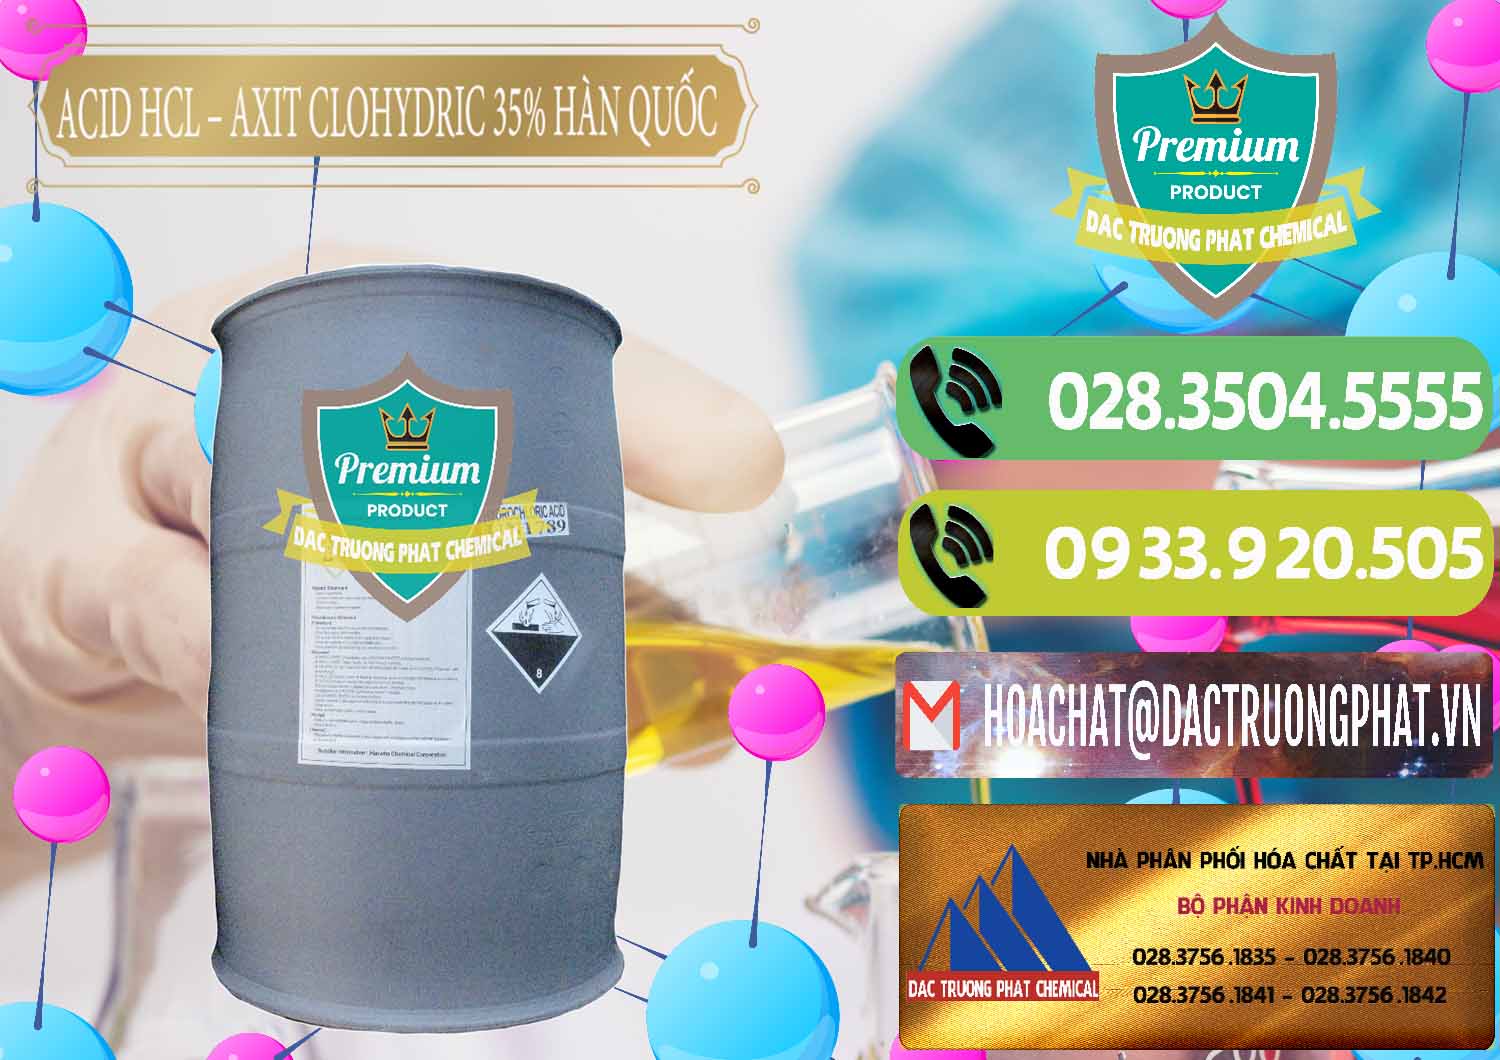 Nhà cung cấp - bán Acid HCL - Axit Cohidric 35% Hàn Quốc Korea - 0011 - Nơi chuyên bán & cung cấp hóa chất tại TP.HCM - hoachatmientay.vn